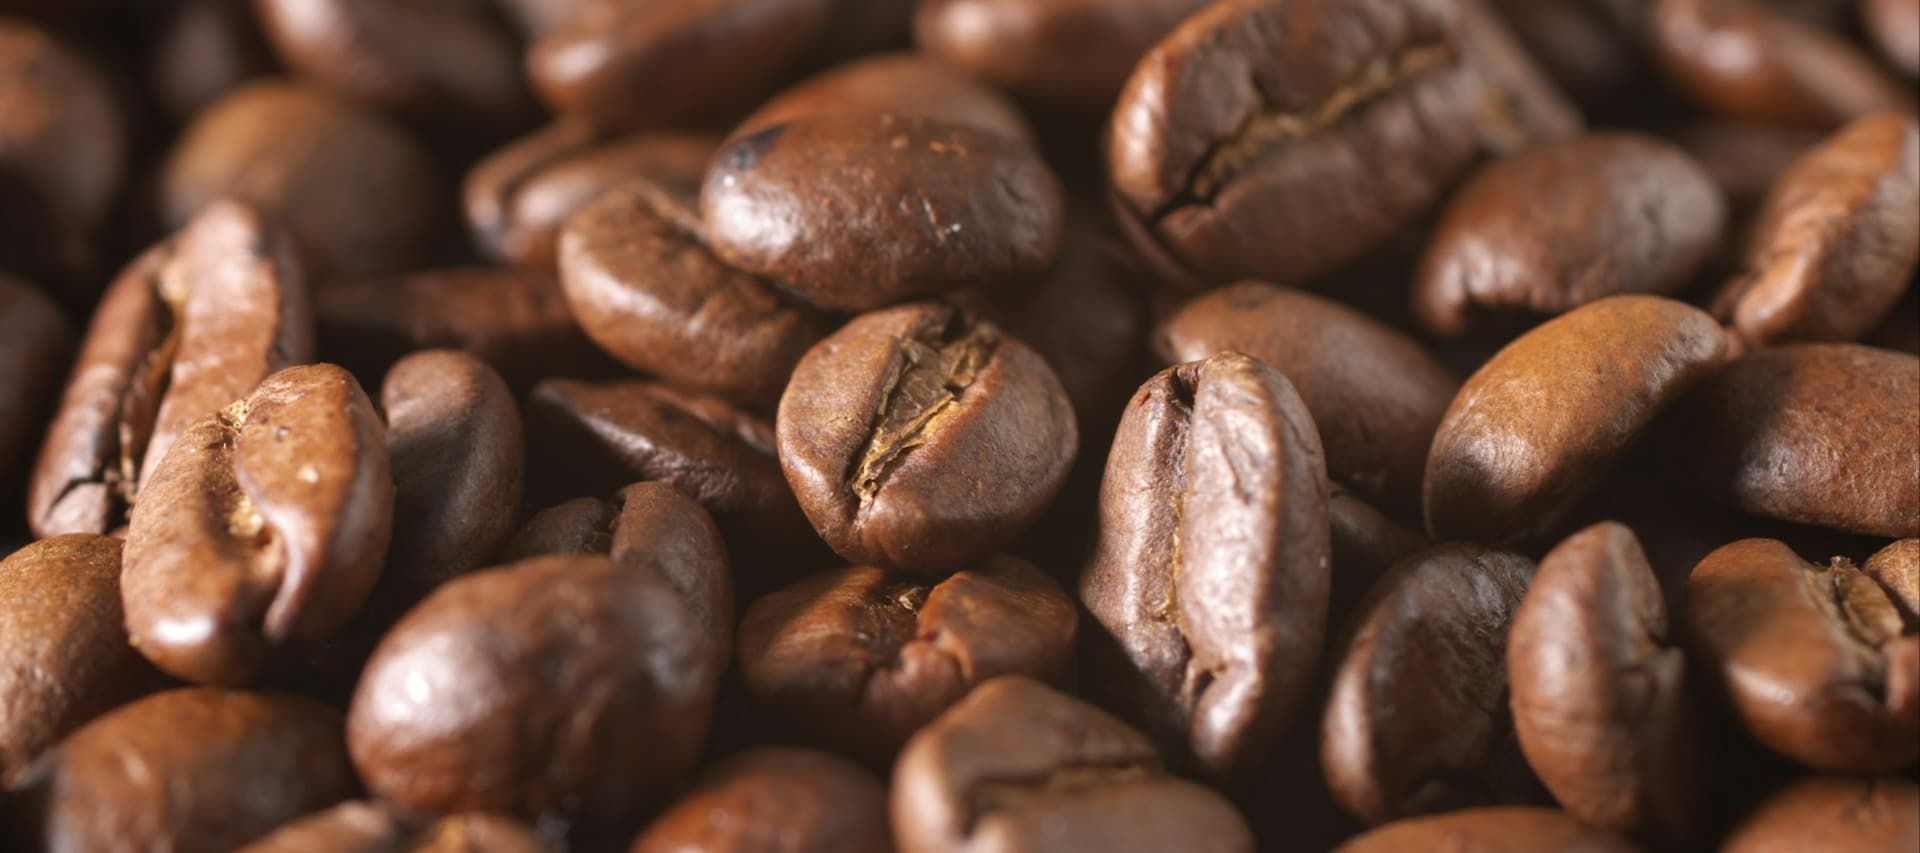 Фото новости: "Оптовые цены на кофе робуста выросли до максимума за 45 лет"